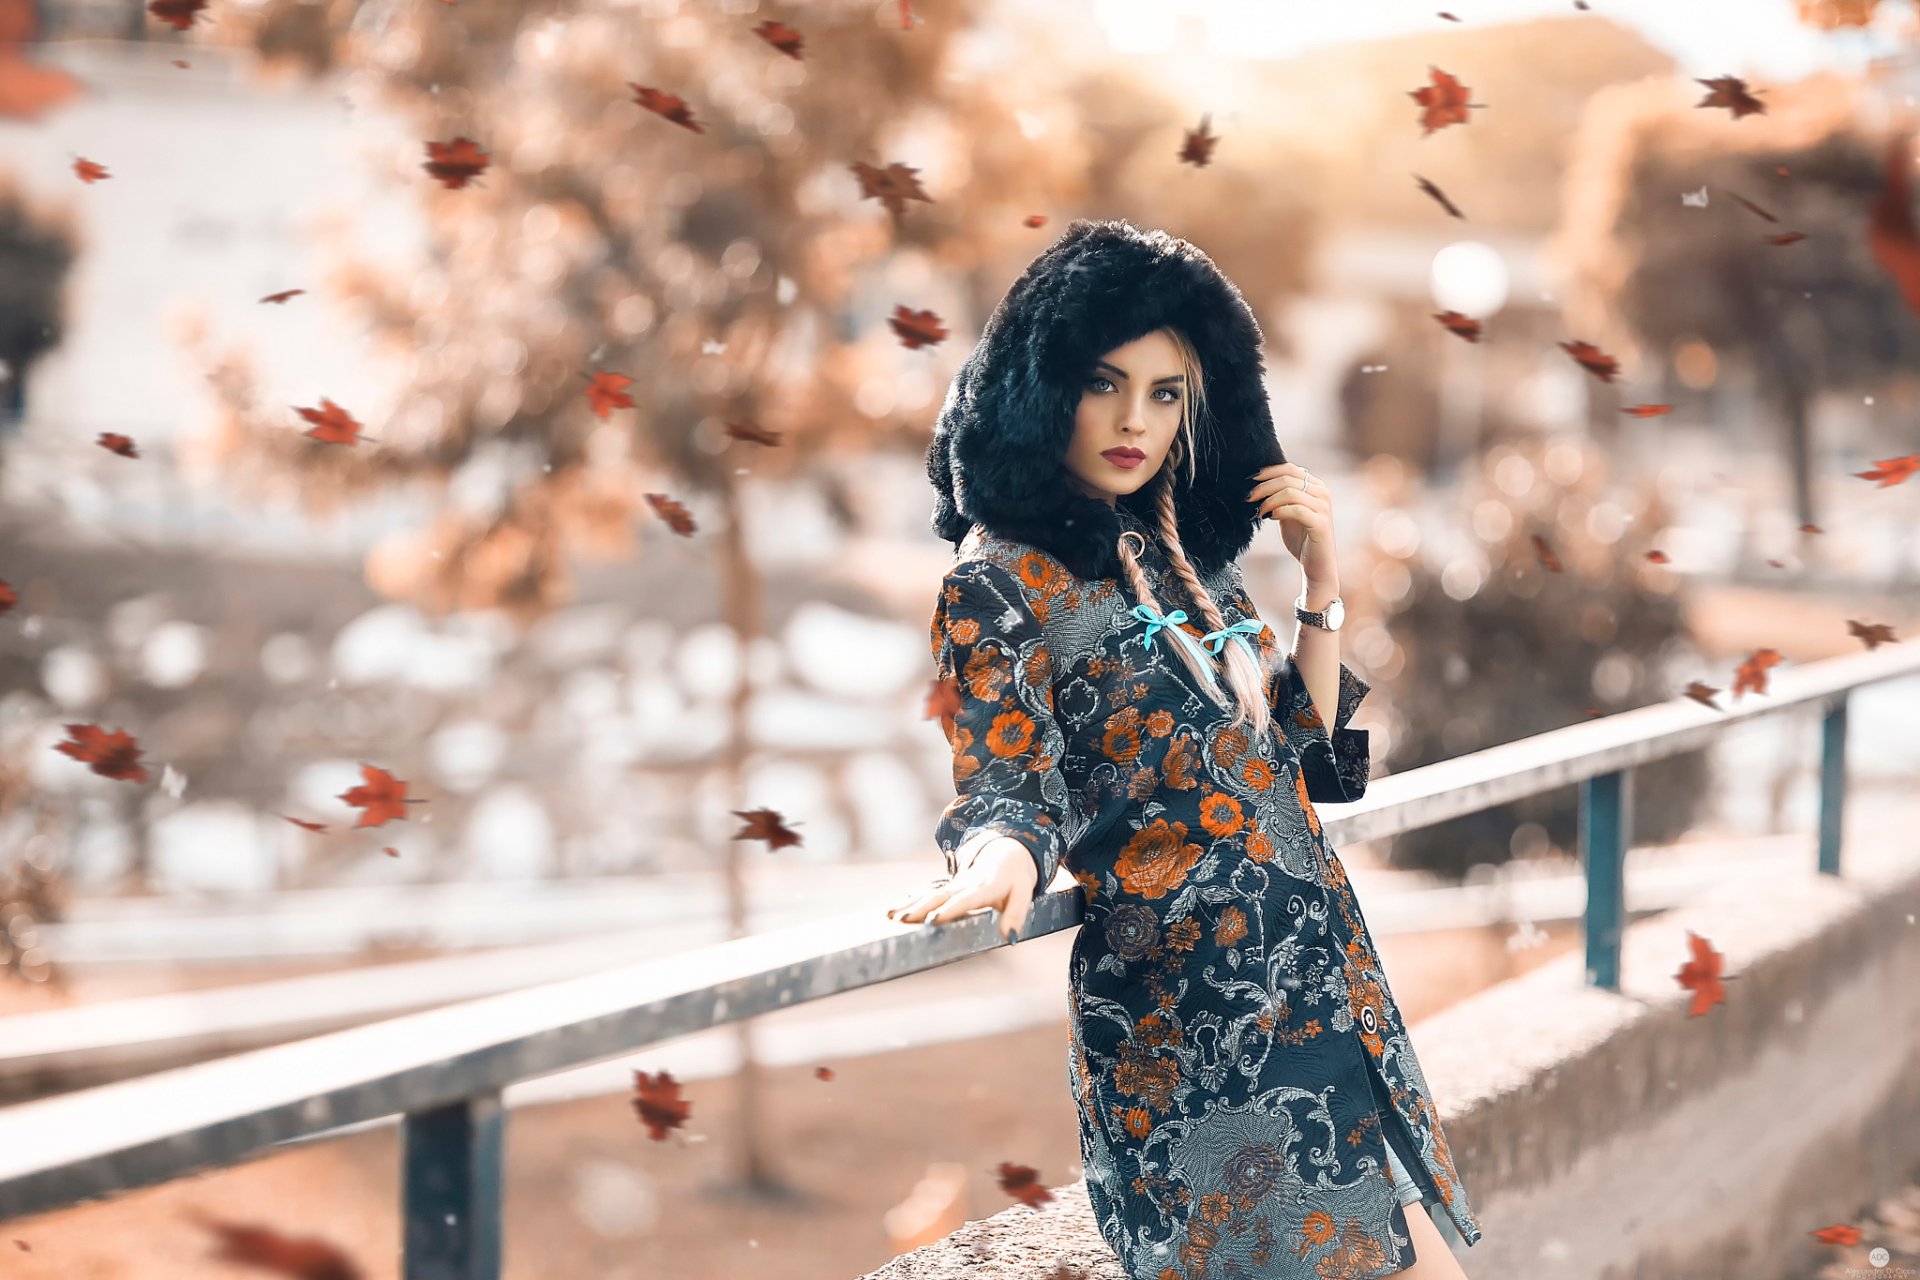 осень красота девушка листопад алессандро ди чикко